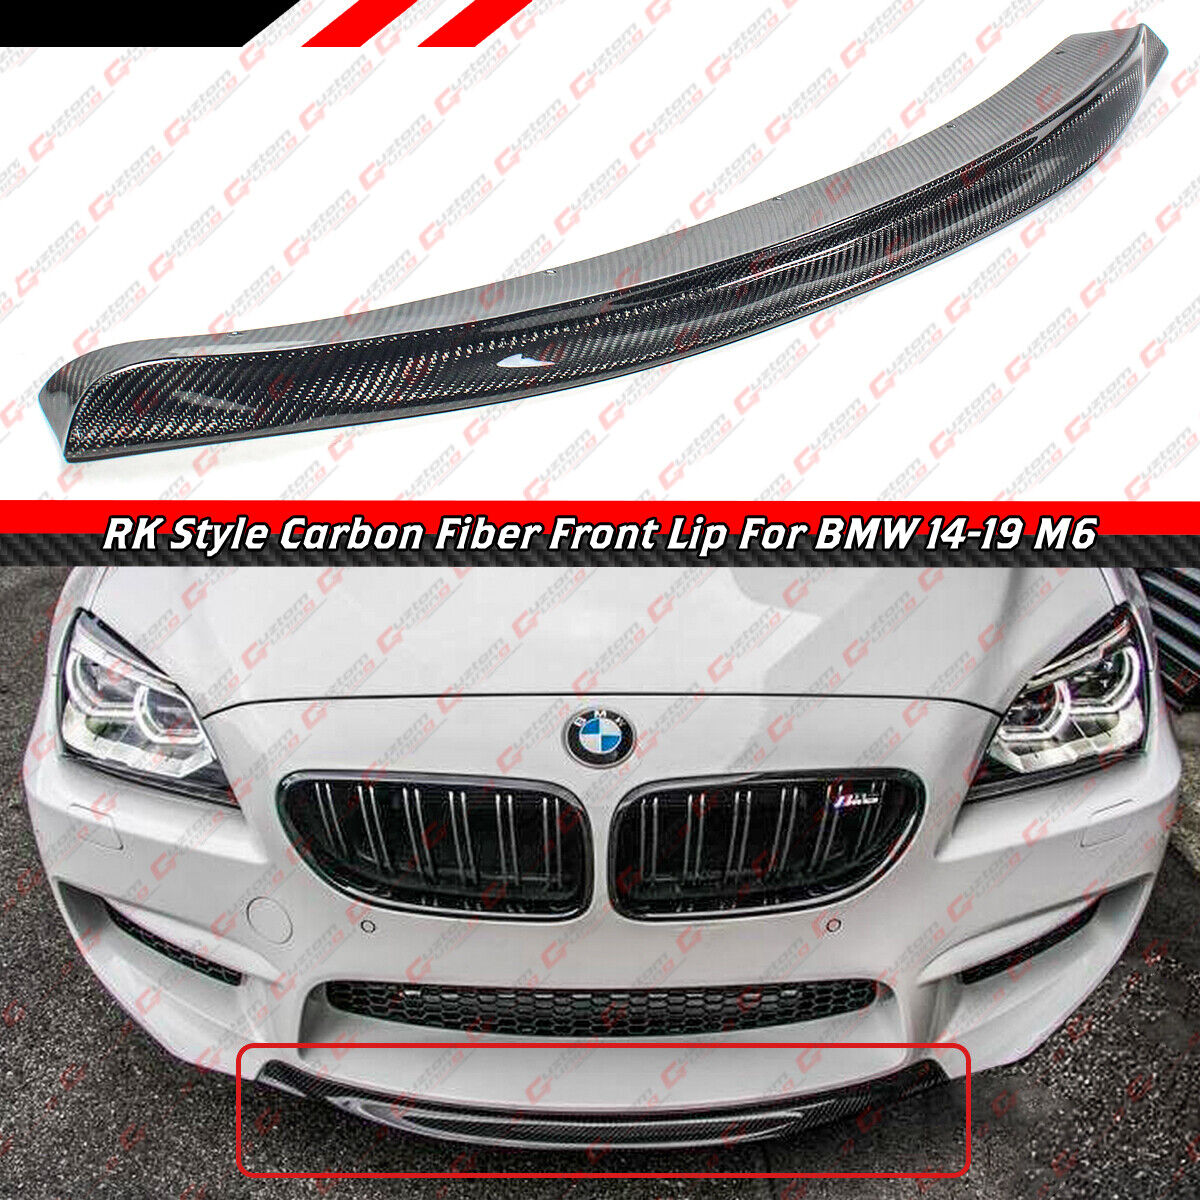 FOR 2014-19 BMW F06 F12 F13 M6 R STYLE CARBON FIBER FRONT BUMPER CENTER CHIN LIP